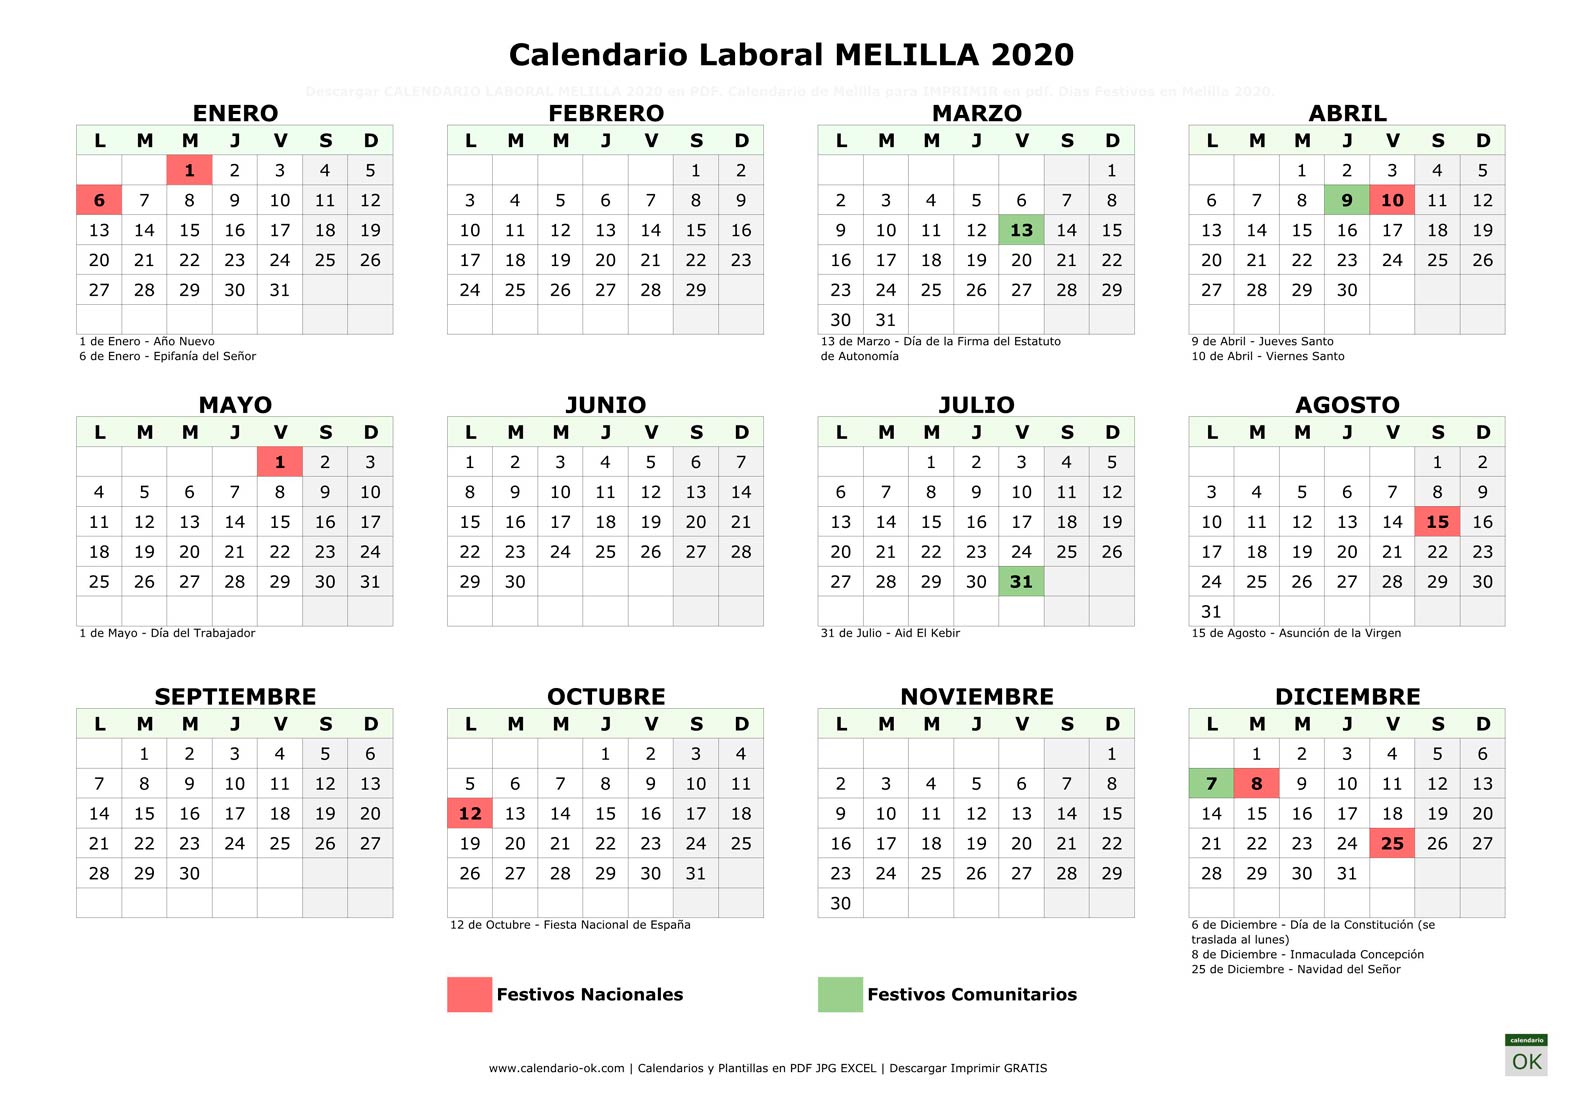 Calendario Laboral CIUDAD MELILLA 2020 horizontal